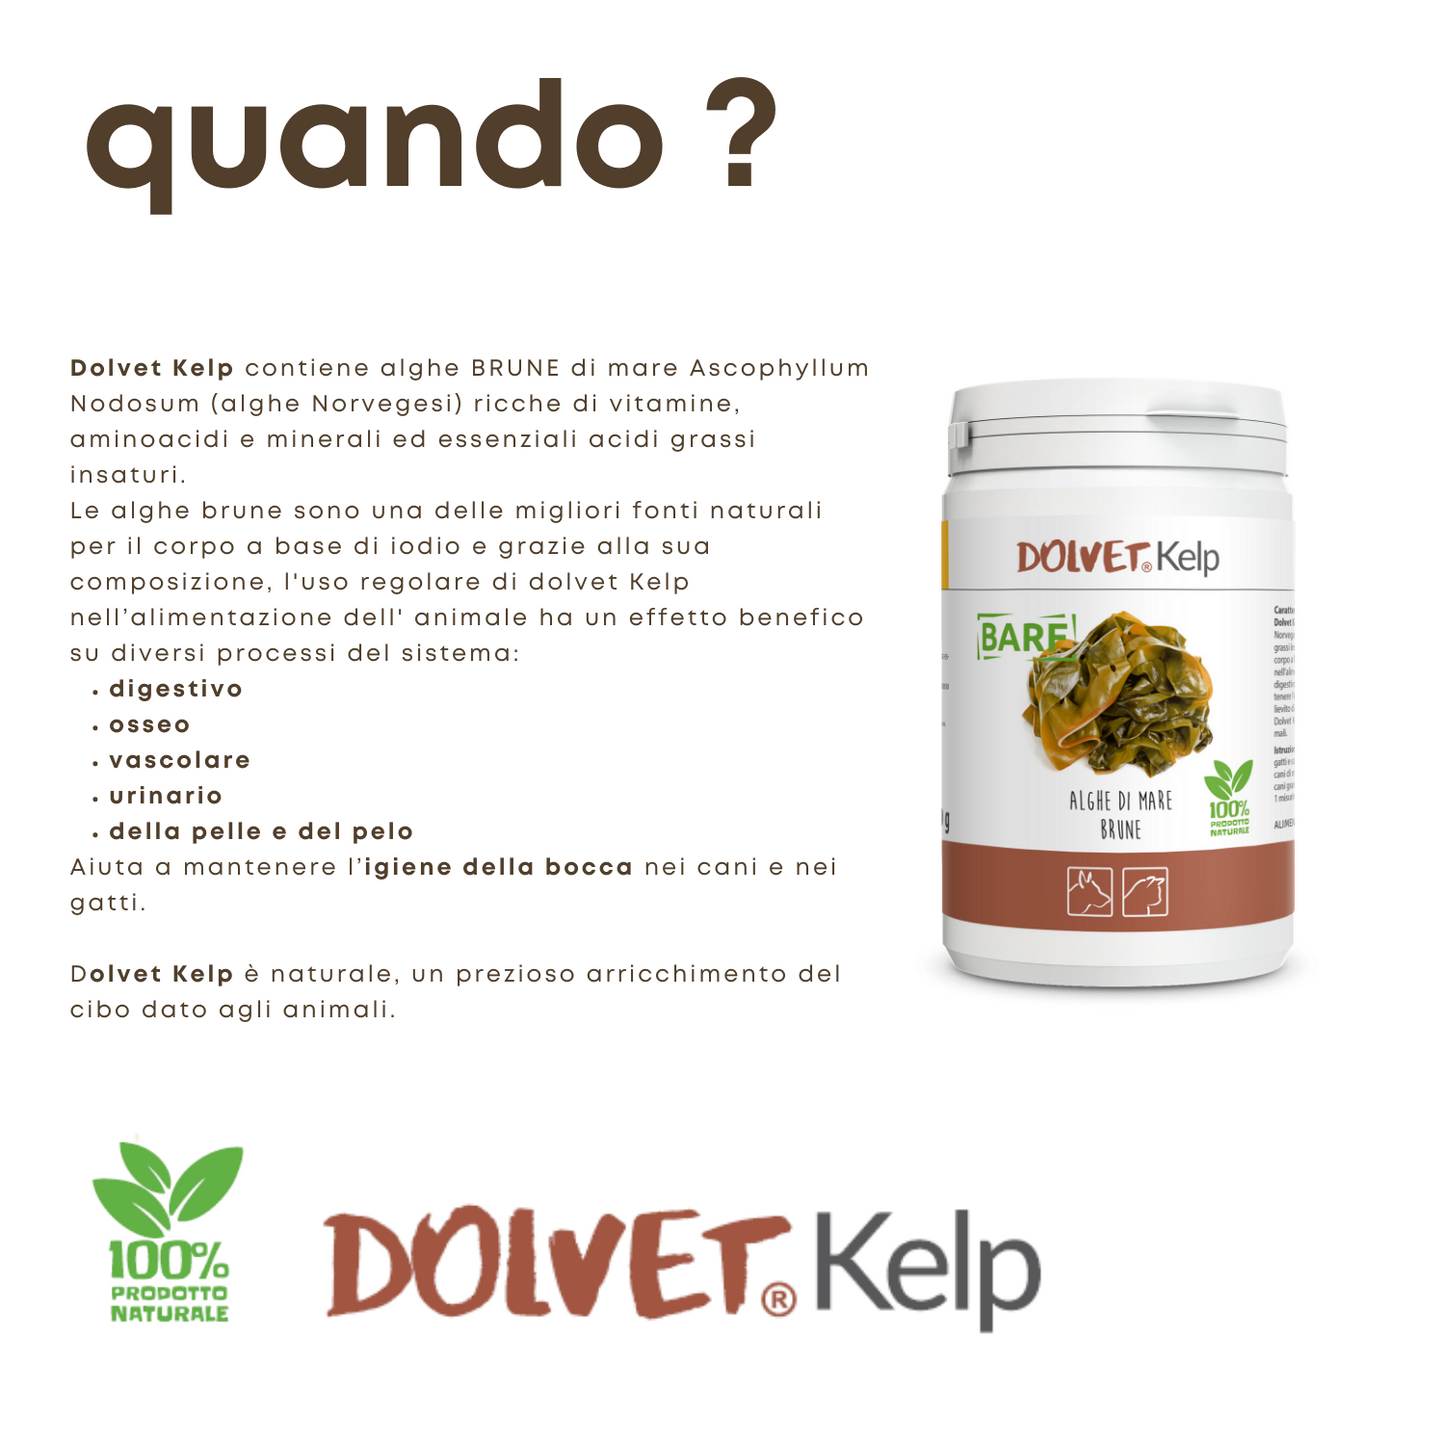 Dolvet Kelp 250 - migliora l'igiene orale ed è benefico sul sistema digestivo, osseo, vascolare, urinario, della pelle, del pelo ....